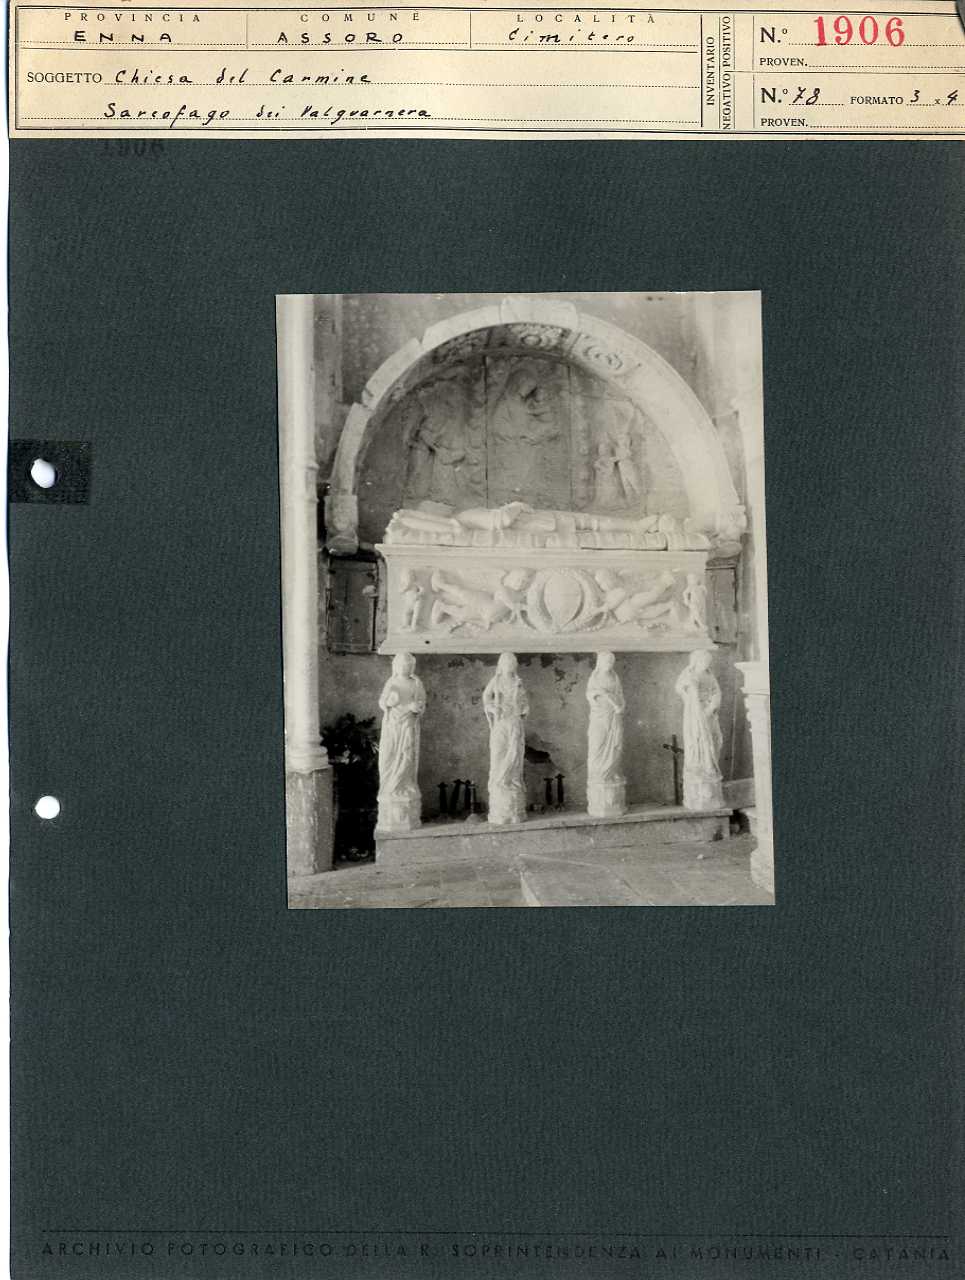 Sicilia - Enna <provincia> - Assoro - Chiese - Monumenti sepolcrali (positivo, elemento-parte componente, scheda di supporto) di Anonimo <1945 - 1955> (metà XX)